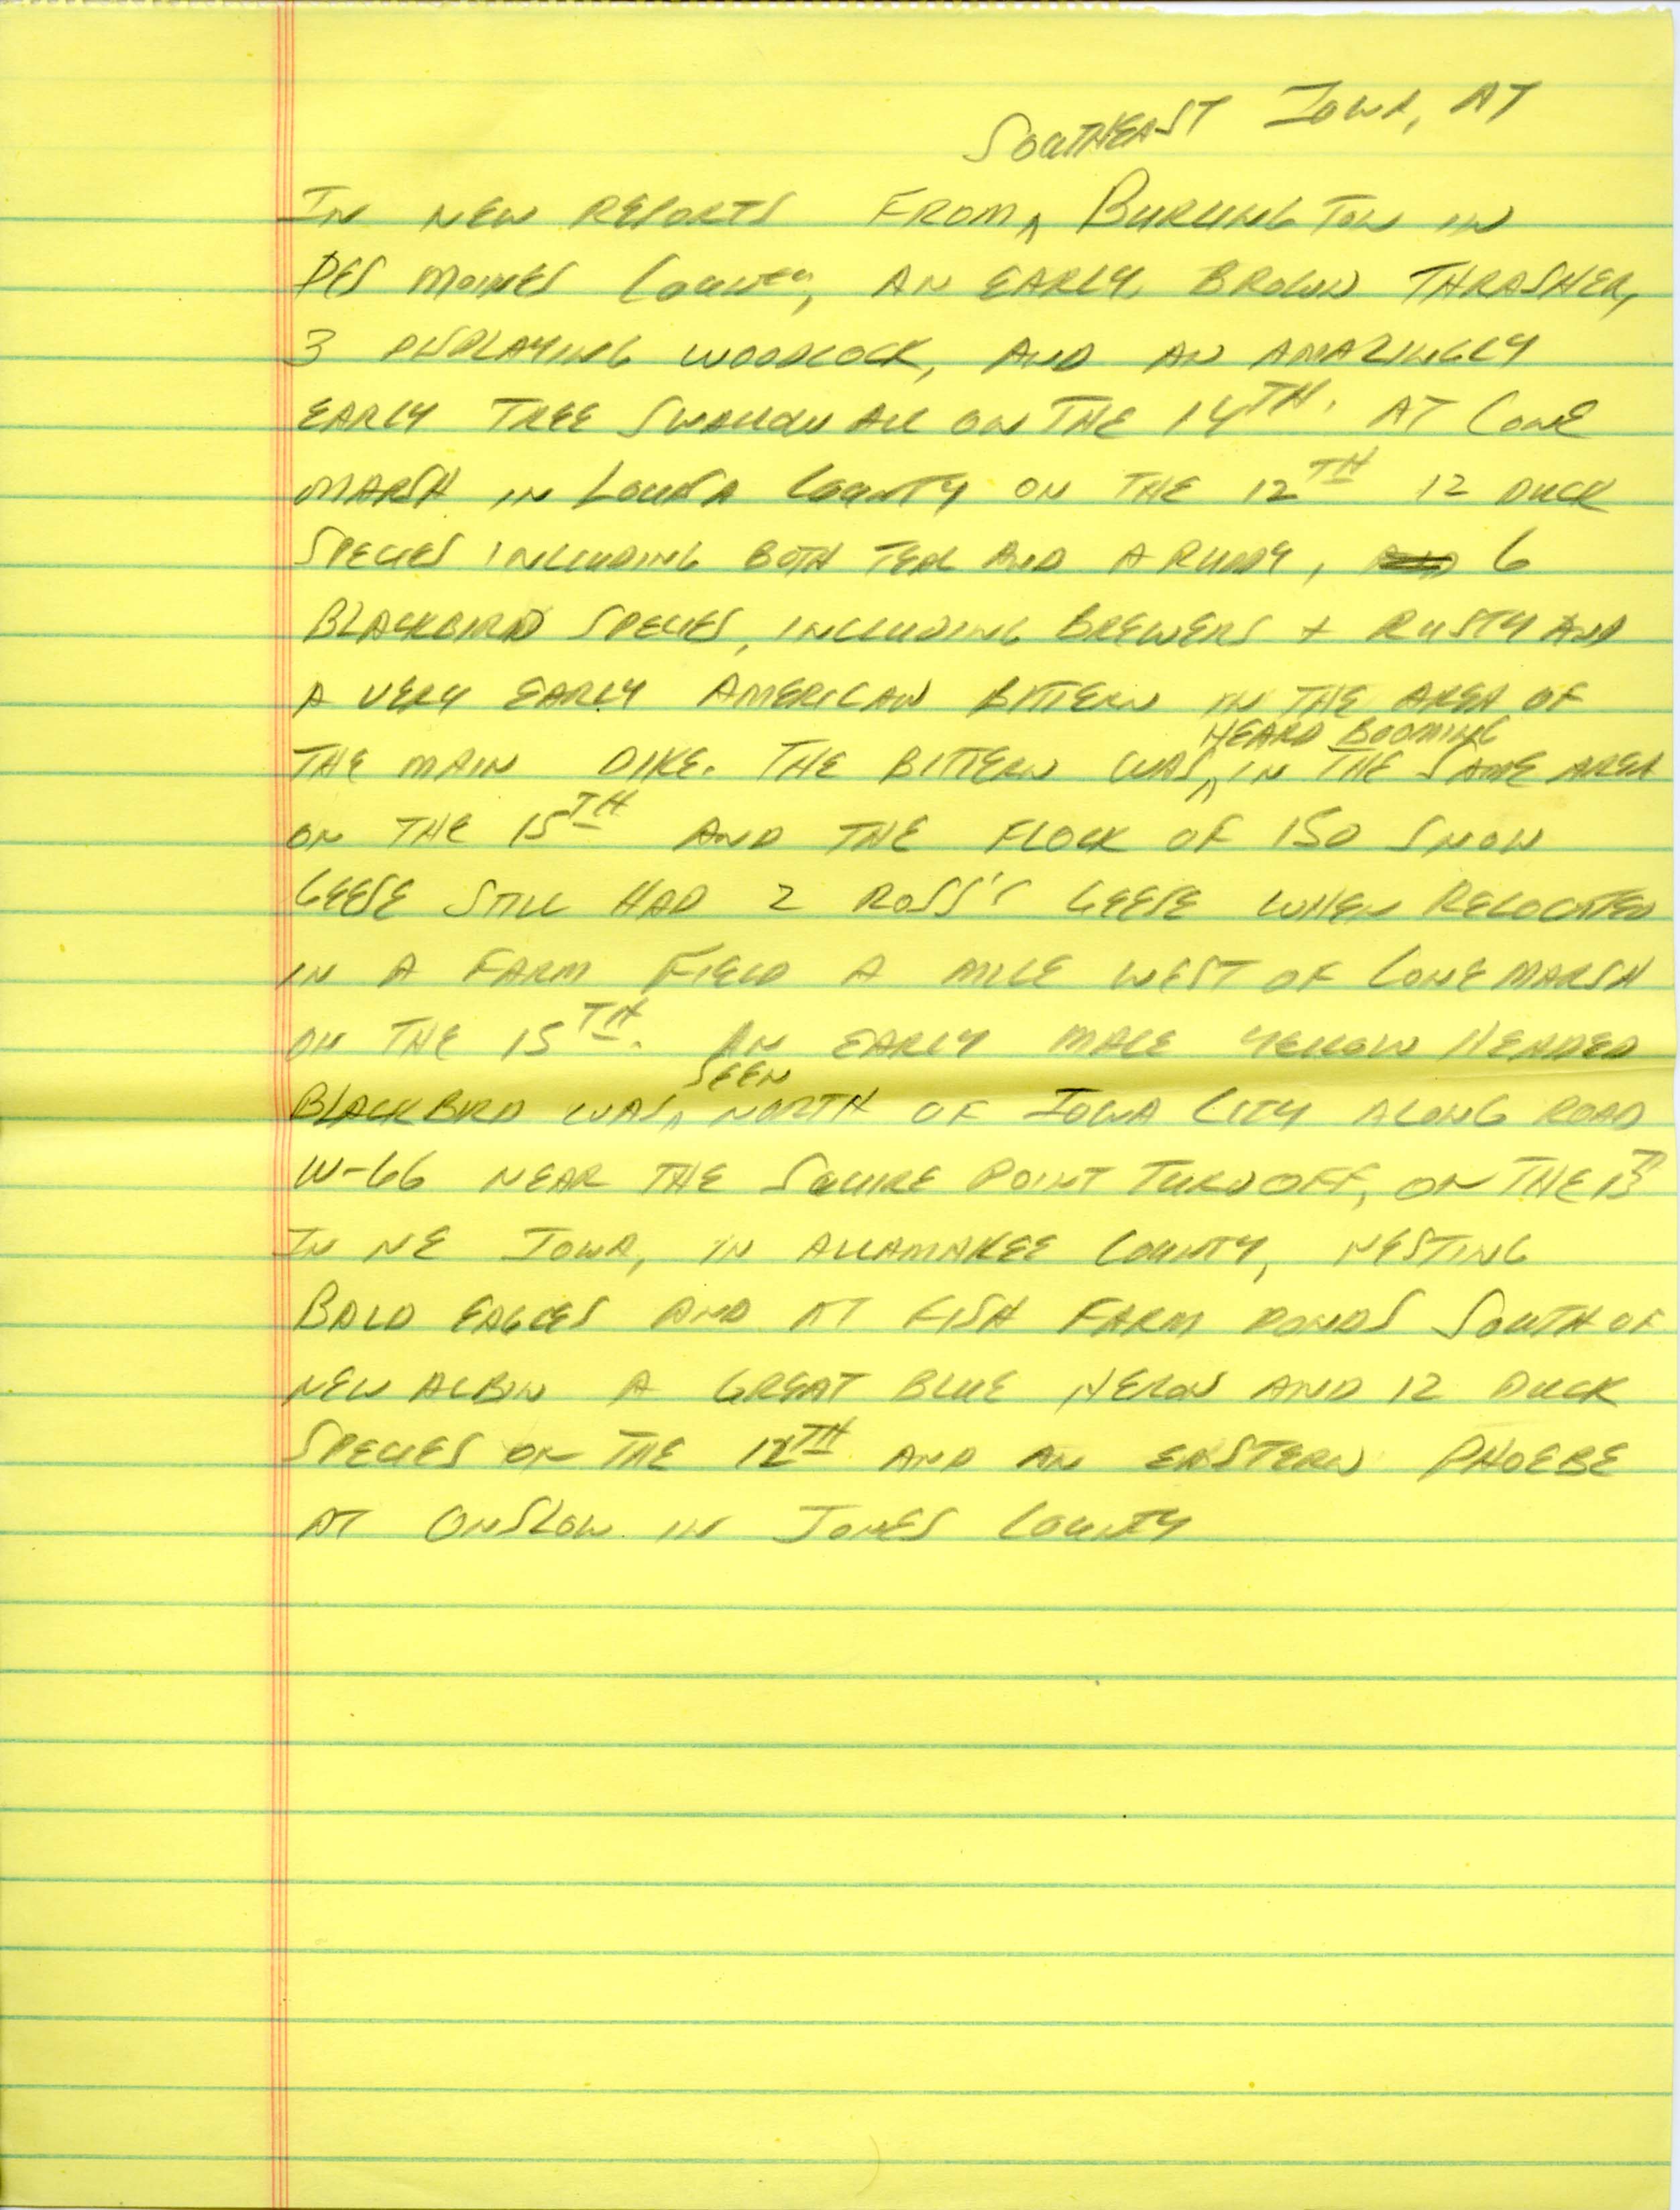 Iowa Birdline Update, March 12, 1990